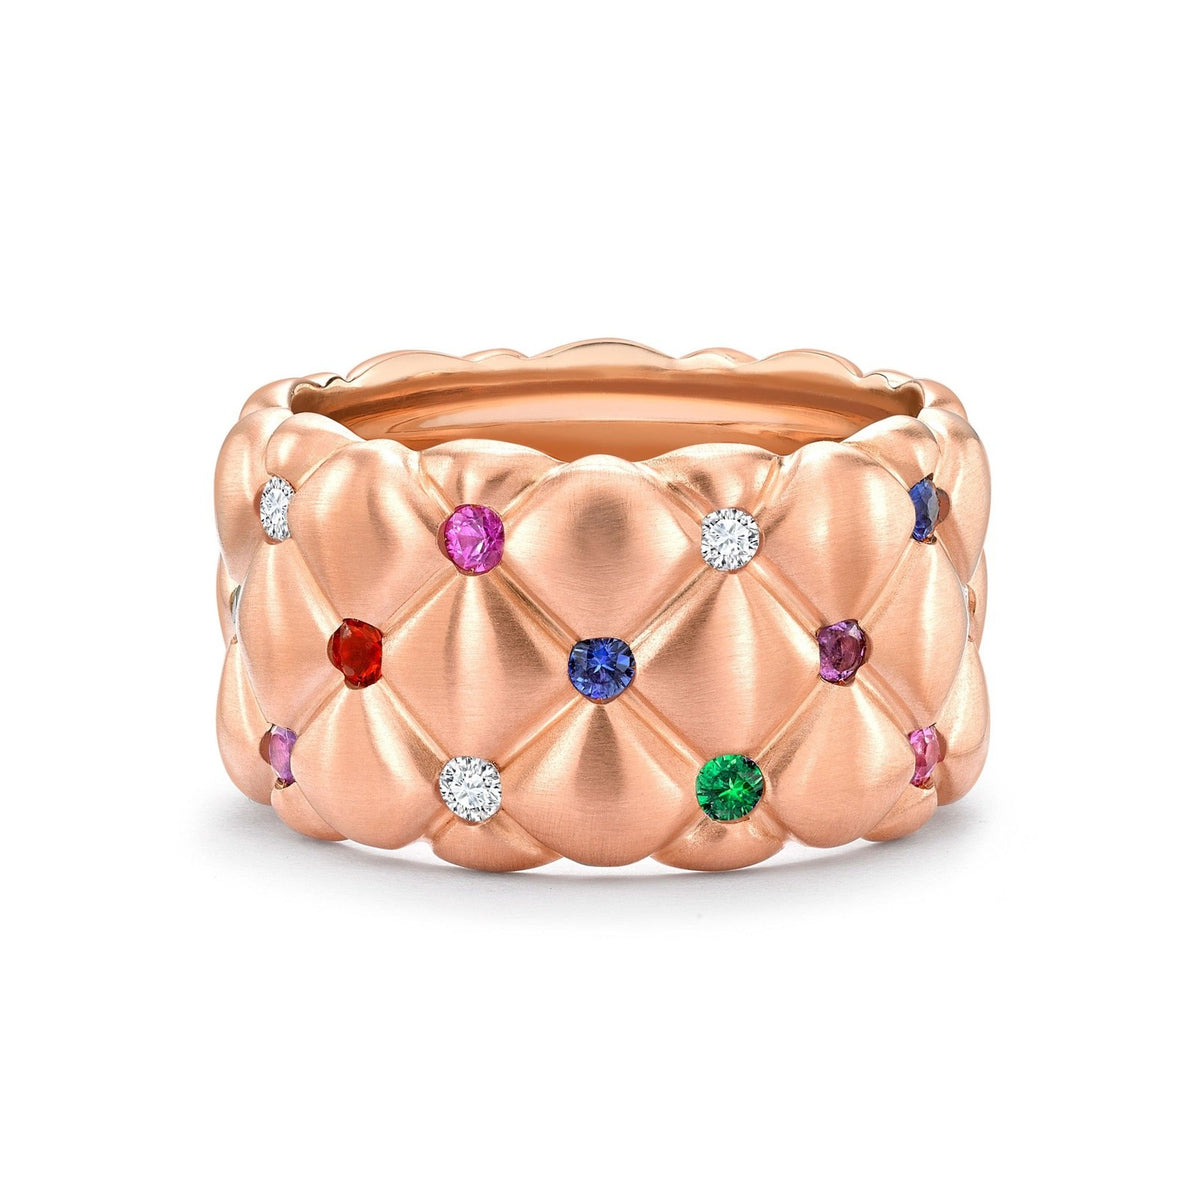 Faberge Treillage Brushed Rose Gold &amp; Multicoloured Gemstone Set Grand Ring - 530RG1358